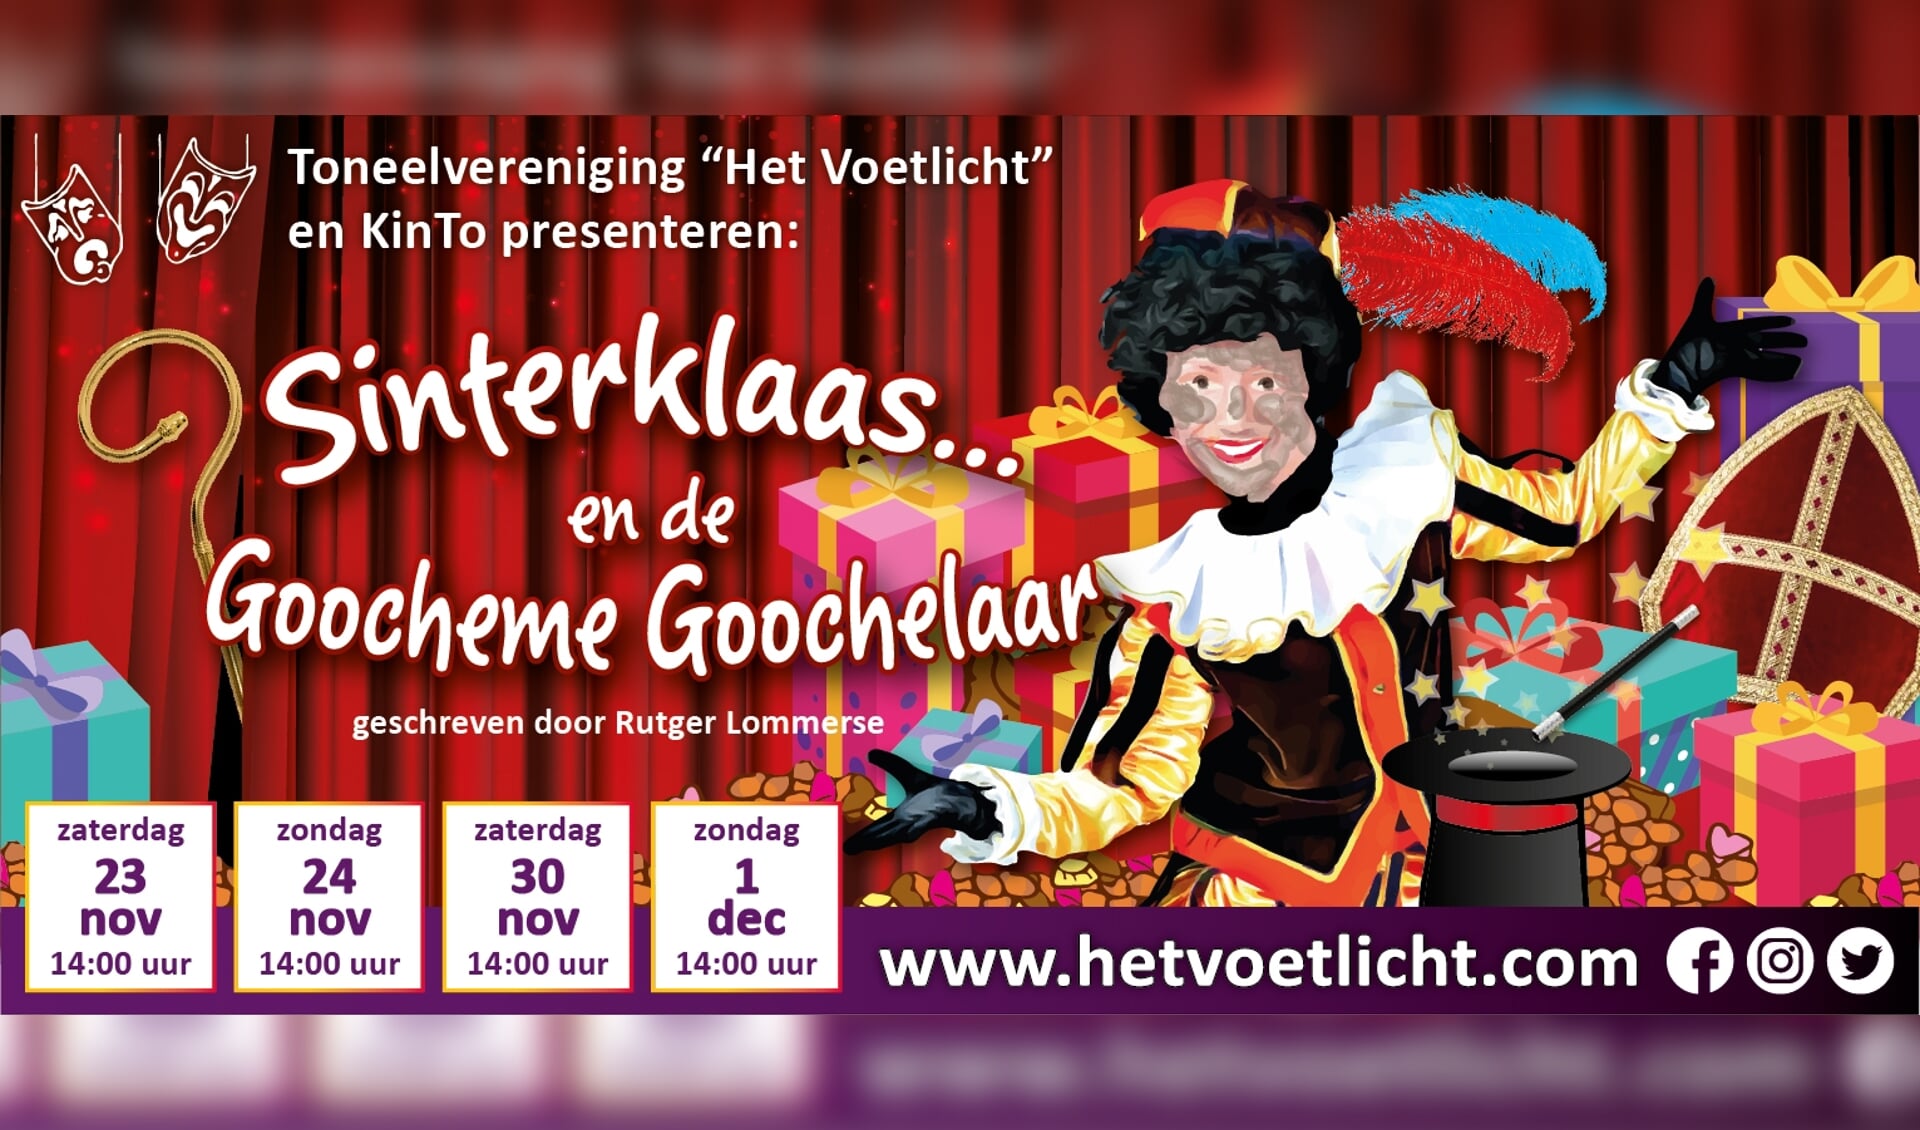 Flyer Sinterklaas......en de goocheme goochelaar